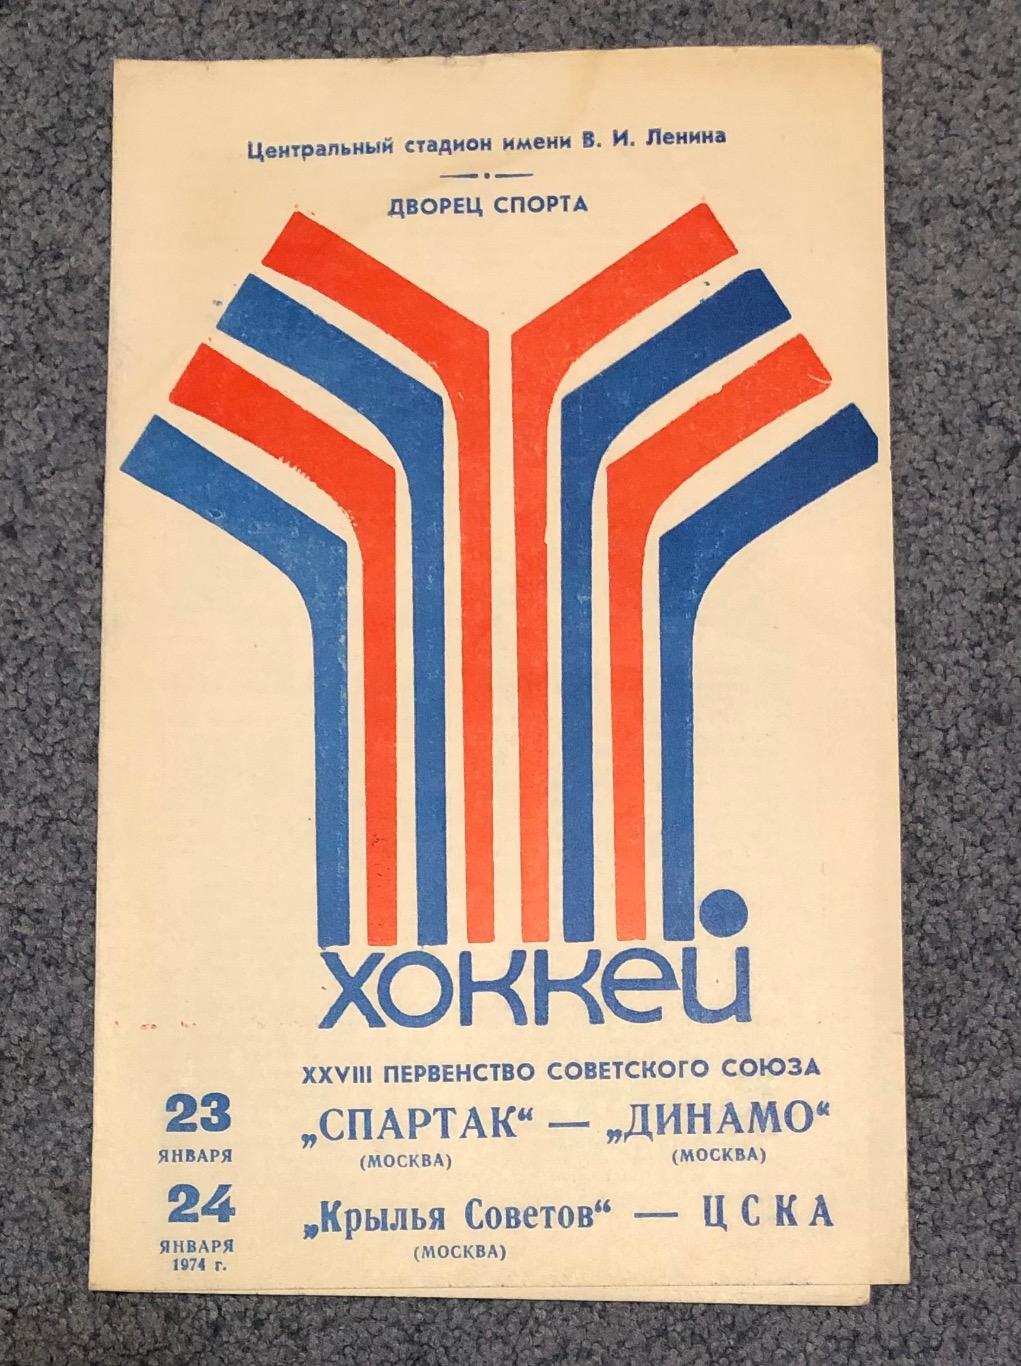 Спартак Москва - Динамо Москва, Крылья Советов Москва - ЦСКА, 23 и 24.01.1974